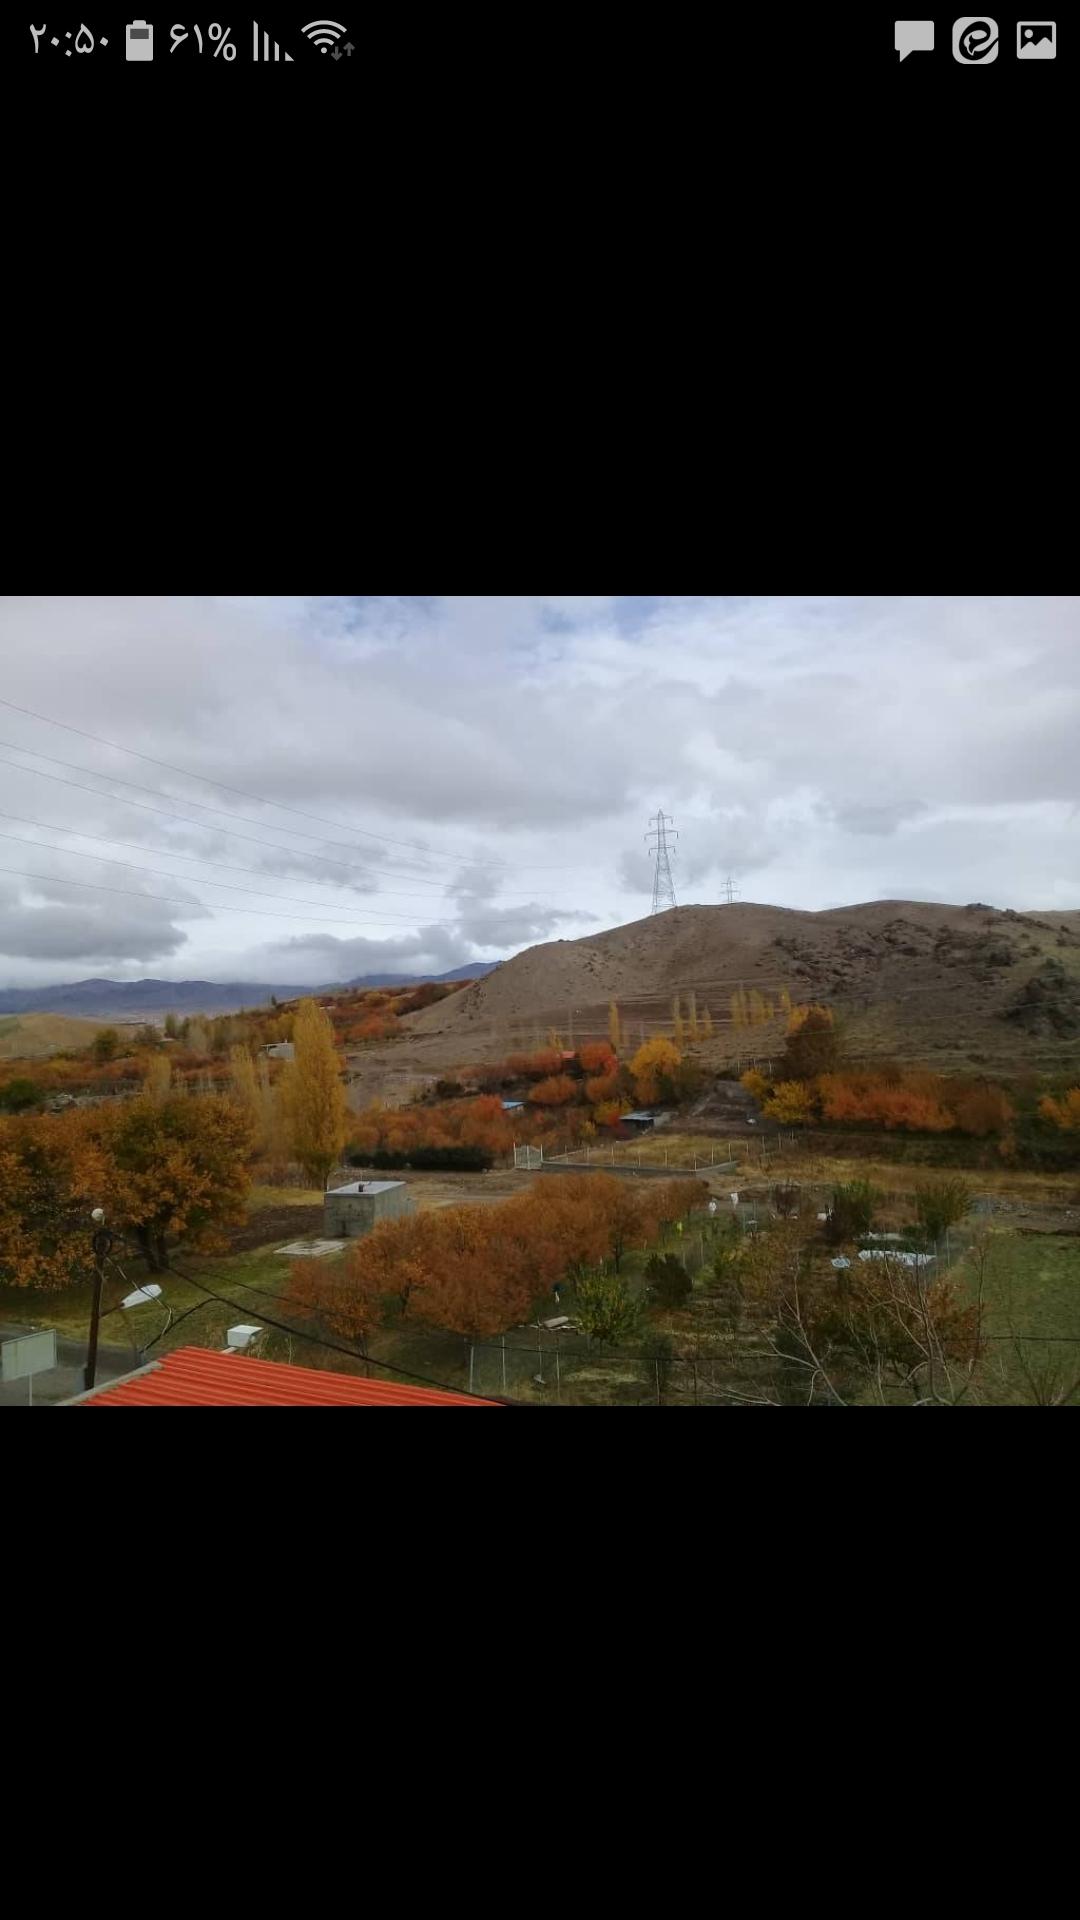 اجاره سوئیت روزانه در زنجان